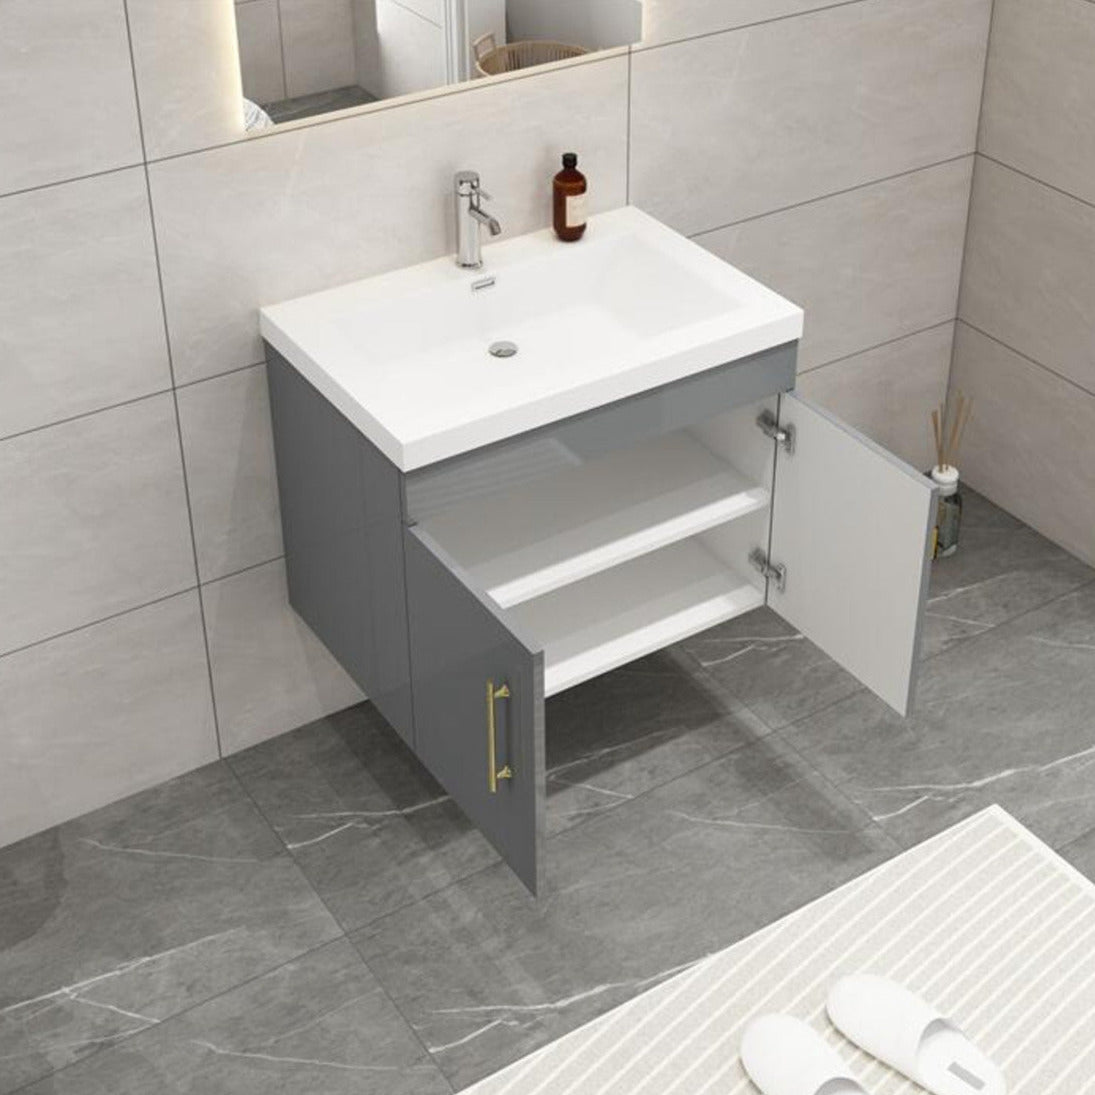 Elsa 30" Wall Mounted Bathroom Vanity with Reinforced Acrylic Sink